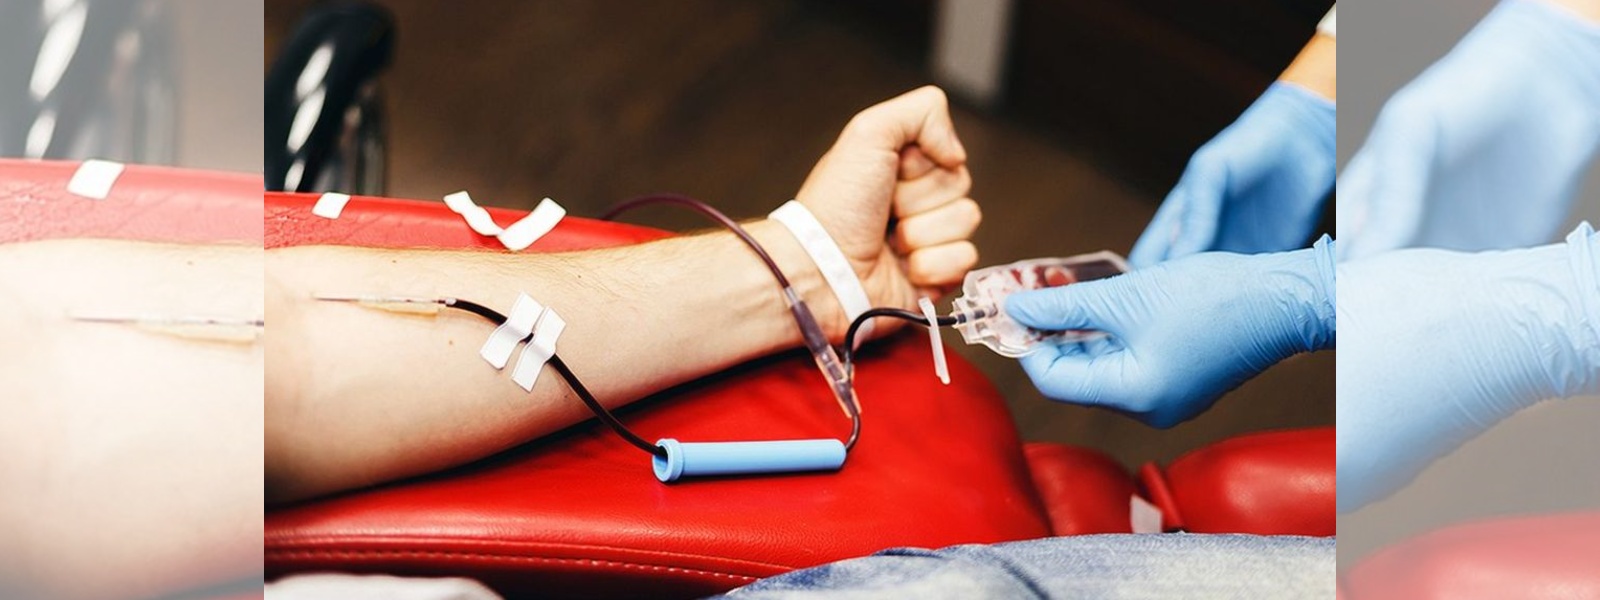 Sri Jayawardenapura Hospital to conduct a Blood Donation Campaign tomorrow